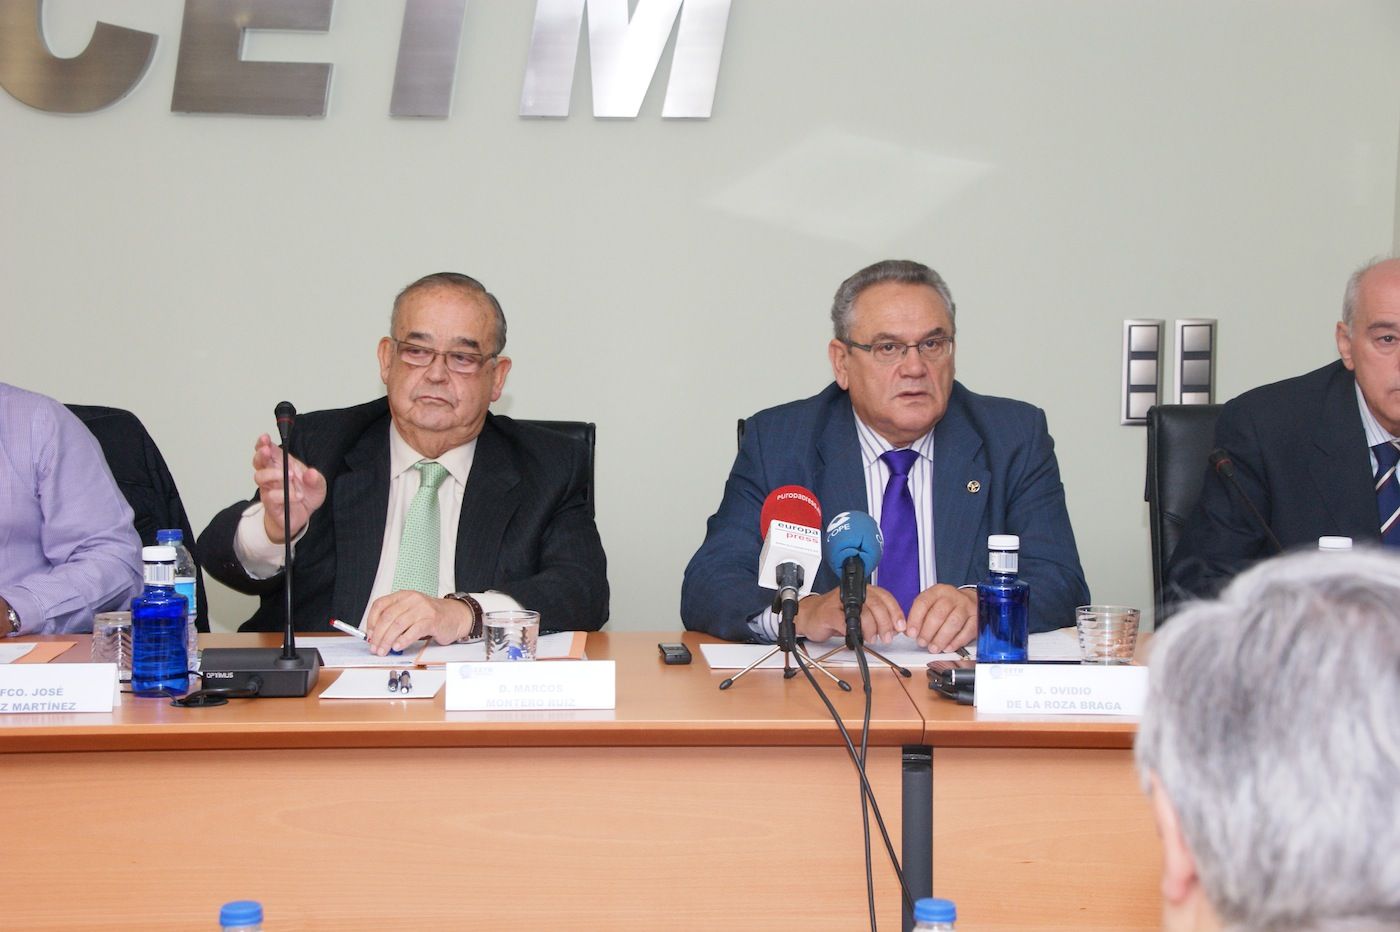 De izda a dcha: Marcos Montero, presidente de CETM, y Ovidio de la Roza, presidente de Conetrans y del CNTC